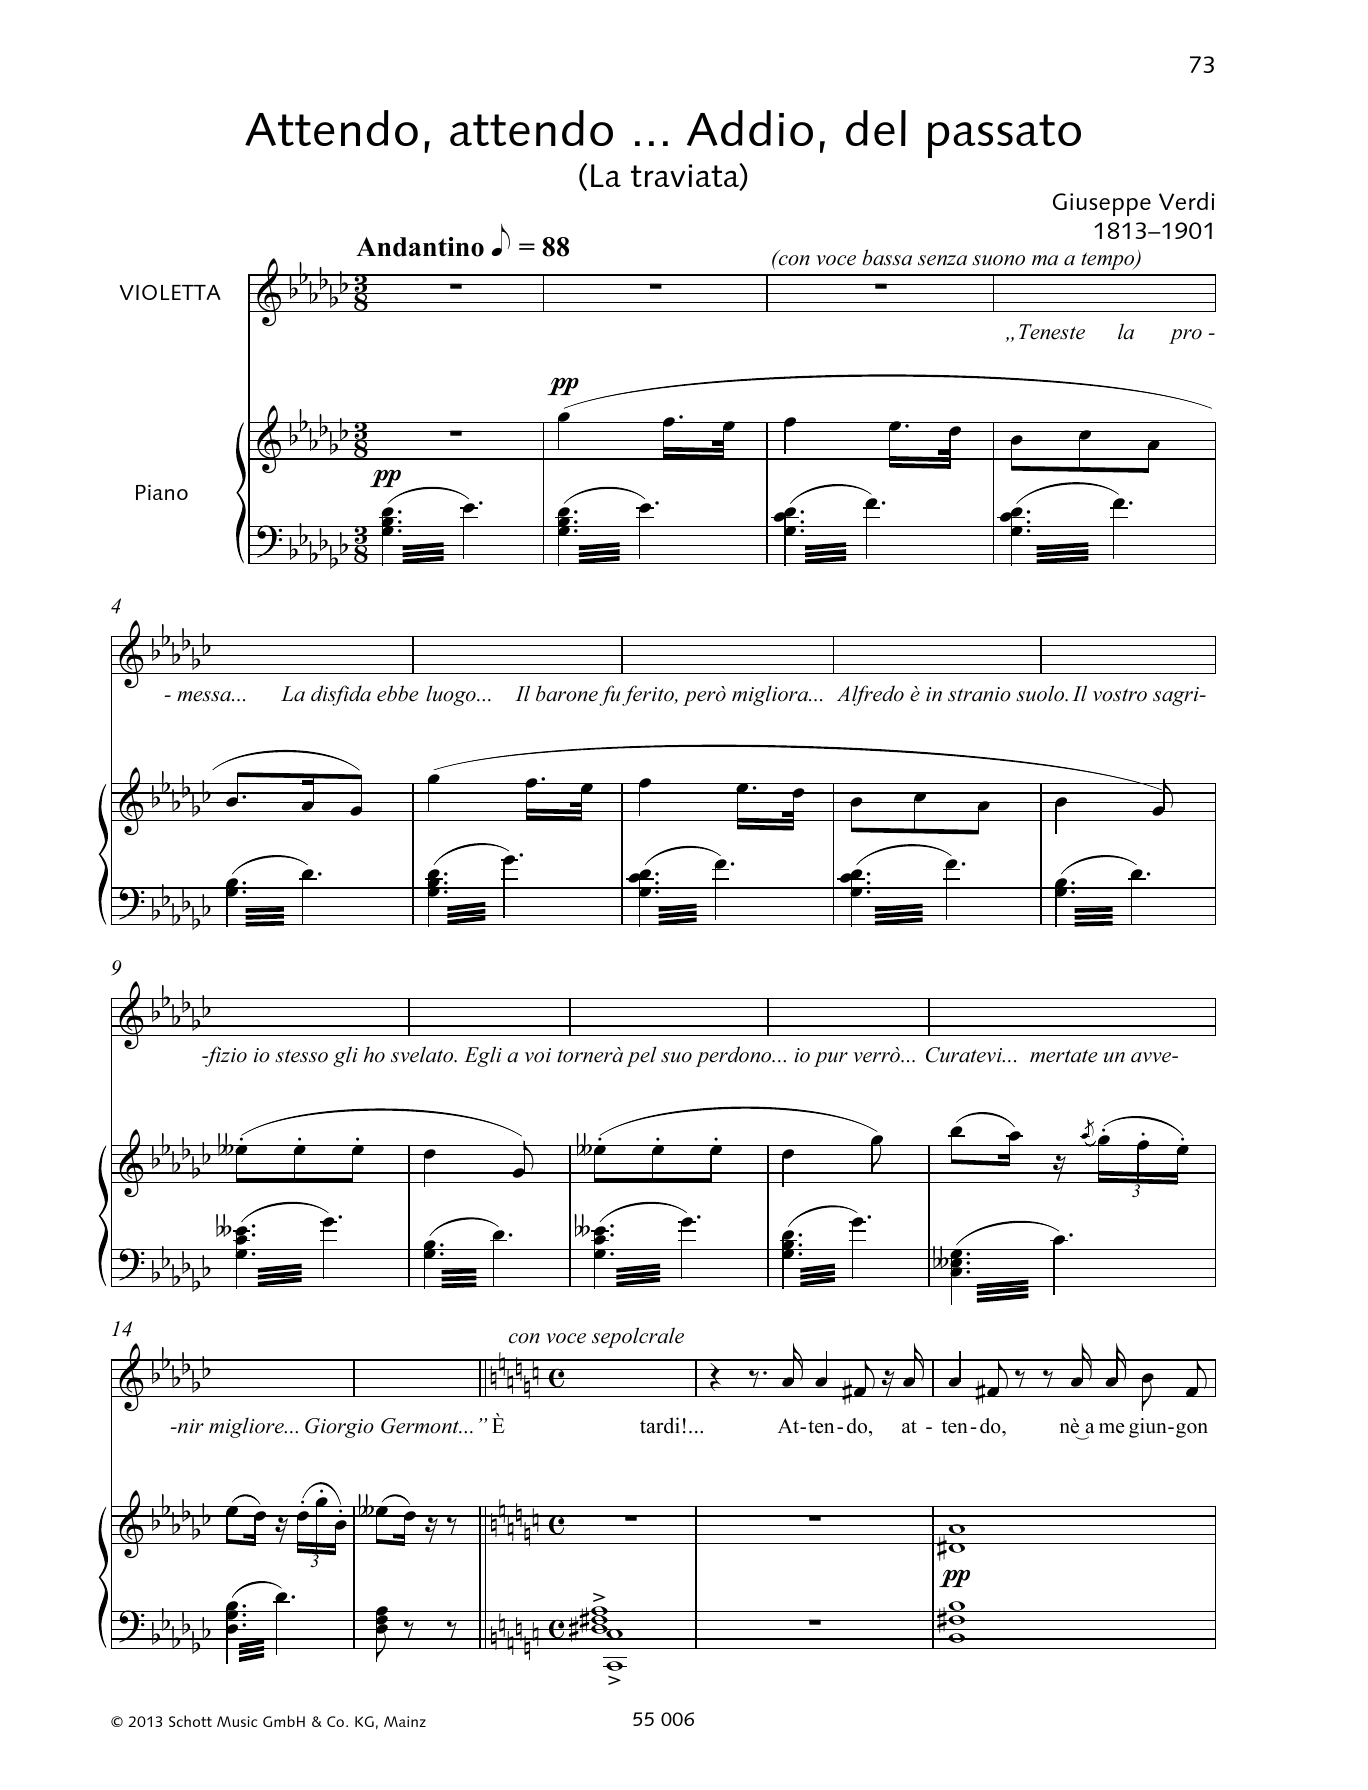 Download Giuseppe Verdi Attendo, attendo ... Addio, del passato Sheet Music and learn how to play Piano & Vocal PDF digital score in minutes